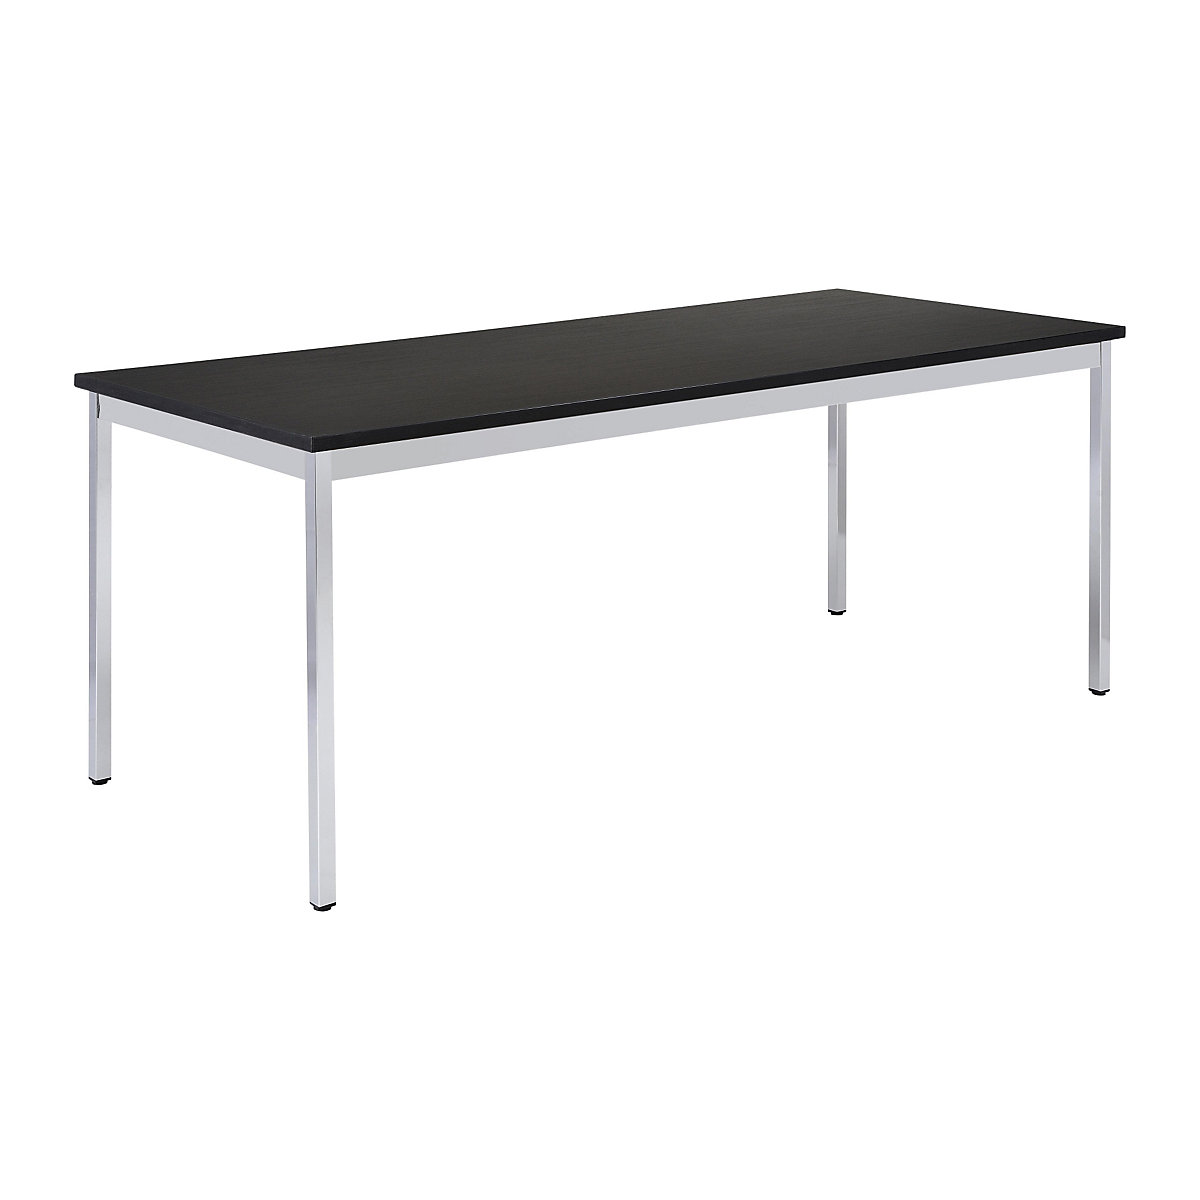 Víceúčelový stůl – eurokraft basic, obdélníkový tvar, š x v 1400 x 740 mm, hloubka 700 mm, deska černá, podstavec pochromovaný-14